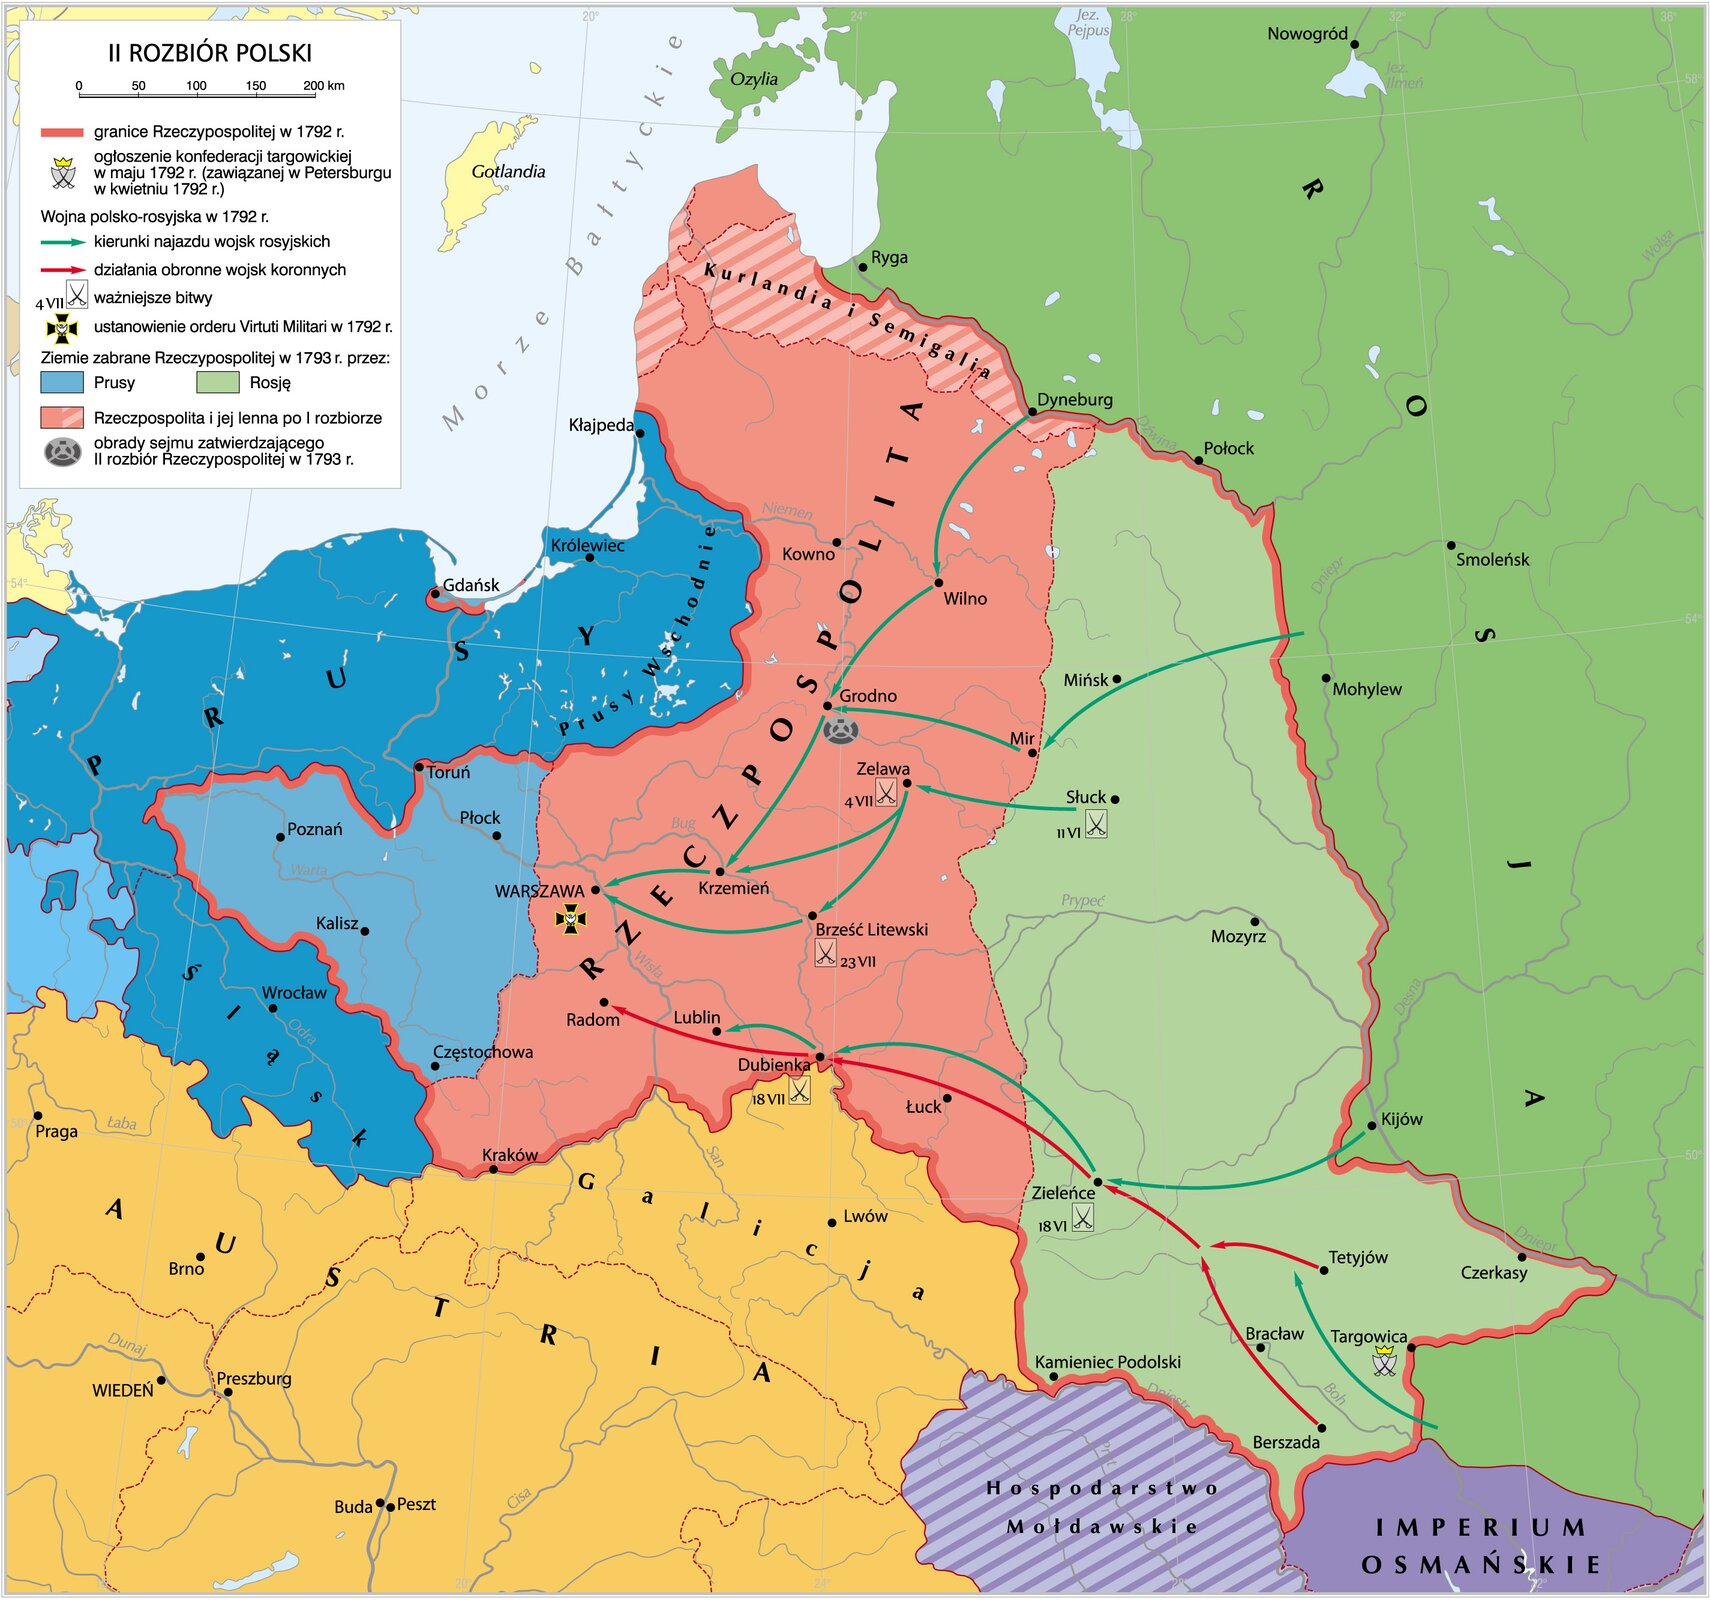 Mapa przedstawia drugi rozbiór Polski.  W 1792 roku Polska zajmowała obszar Wielkopolski, Gdańska, Litwy, Żmudzi, Białorusi, Lubelszczyzny, Wołynia, północnej Małopolski i centralnej Ukrainy. Jej lennem była Kurlandia.  W maju 1792 roku została ogłoszona konfederacja targowicka, która została zawiązana w Petersburgu w kwietniu 1792 roku.  Wojska rosyjskie zaatakowały z Dyneburga, Mohylewa, Kijowa i południowej Ukrainy. Wojska południowe dotarły do Warszawy po drodze zdobywając Wilno, Mińsk, Słusk, Mir, Zalewę, Grodno, Brześć Litewski i Krzemień. Południowe armie dotarły do Lublina zdobywając Zieleniec i Dubienkę. Wojska Polskie z Ukrainy wycofały się do Radomia.  W Warszawie w 1792 roku został ustanowiony order Virtuti Militari.  W 1793 roku, Prusy odebrały Polsce Wielkopolskę, Gdańsk i zachodnie Mazowsze, a Rosja wschodnią Białoruś i centralną Ukrainę.  W Grodnie w 1793 roku odbyły się obrady sejmu zatwierdzającego drugi rozbiór Rzeczpospolitej. 